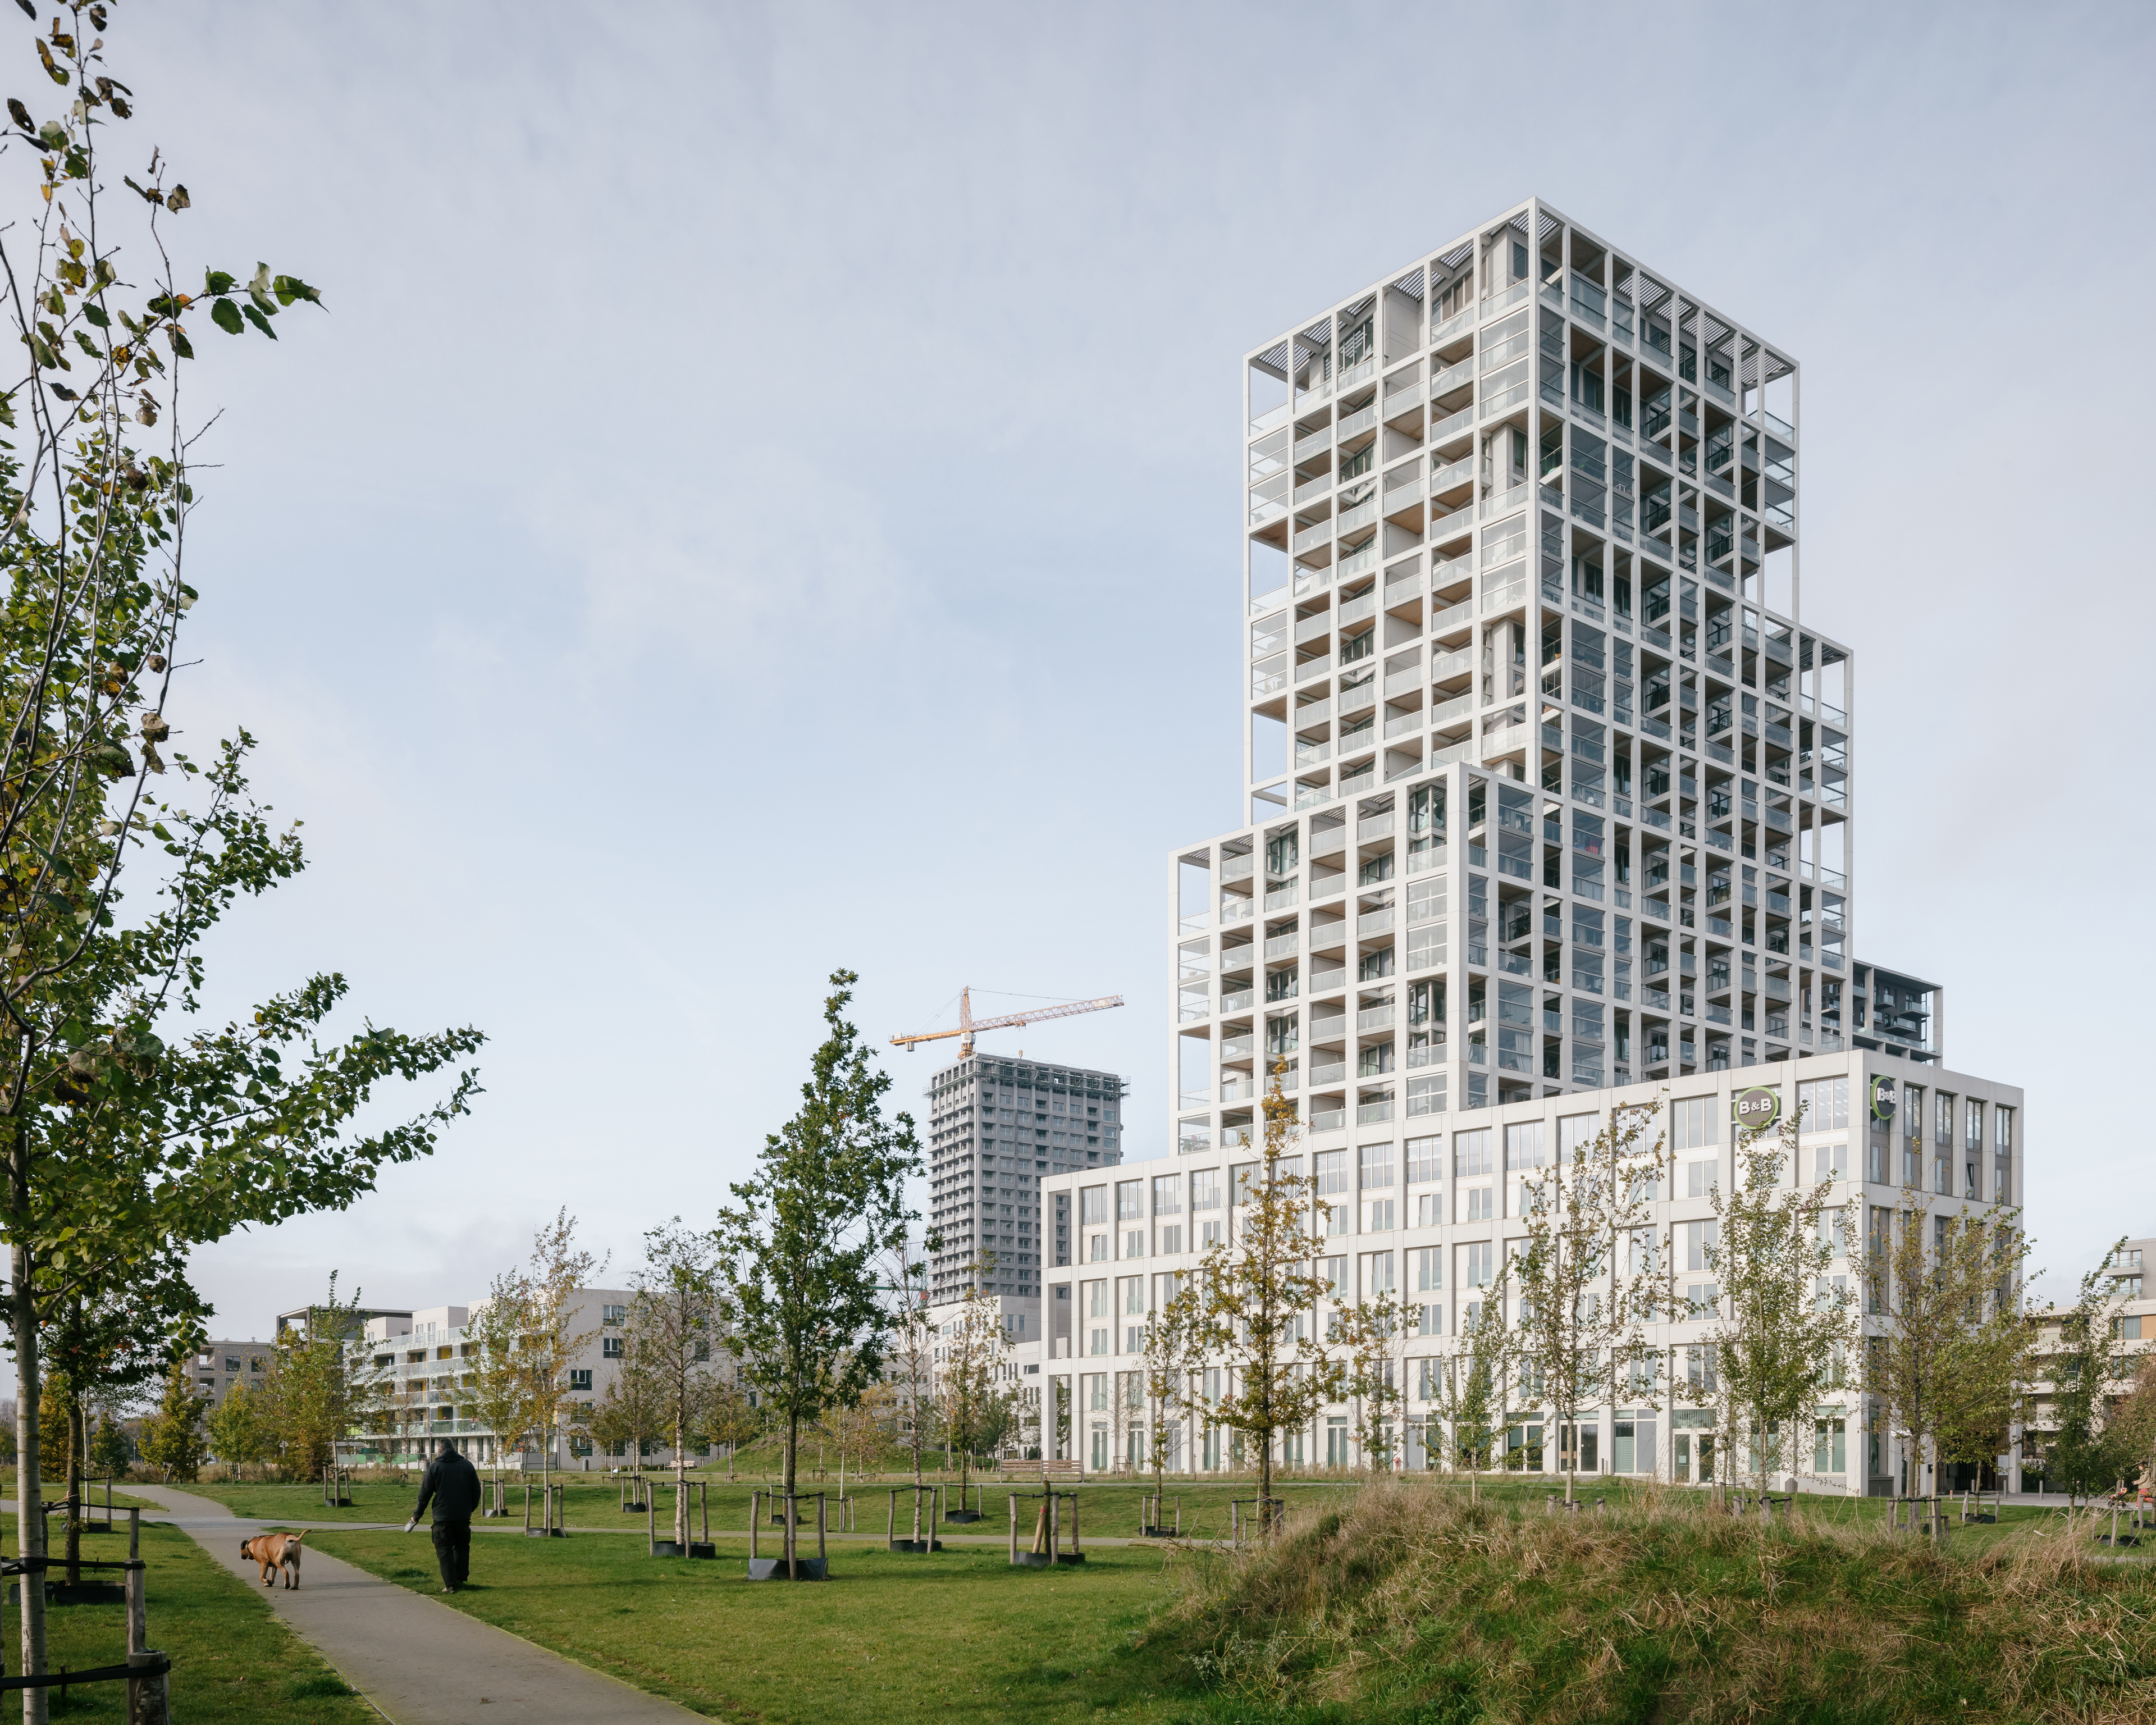 Zuiderzicht Antwerp by KCAP with evr-architecten 